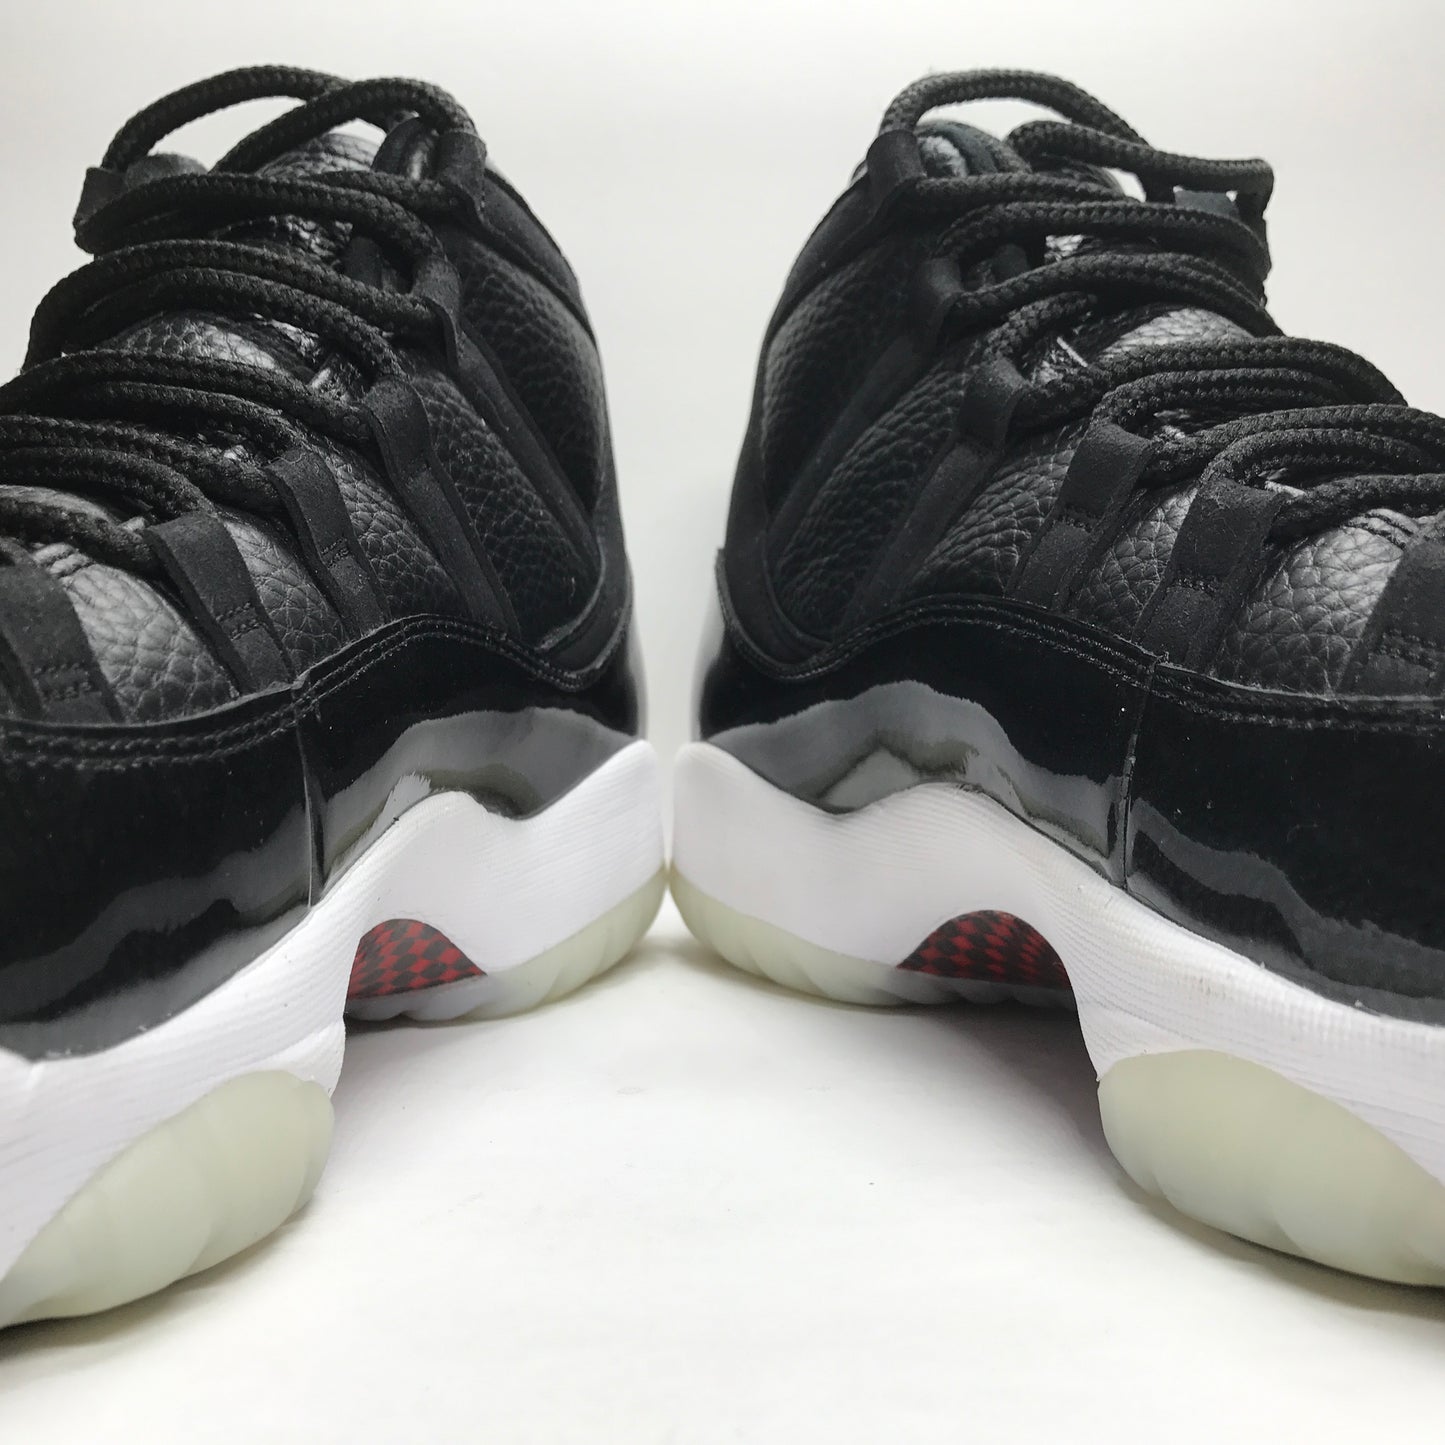 Nike Air Jordan 11 XI Retro 72-10 Size 11.5